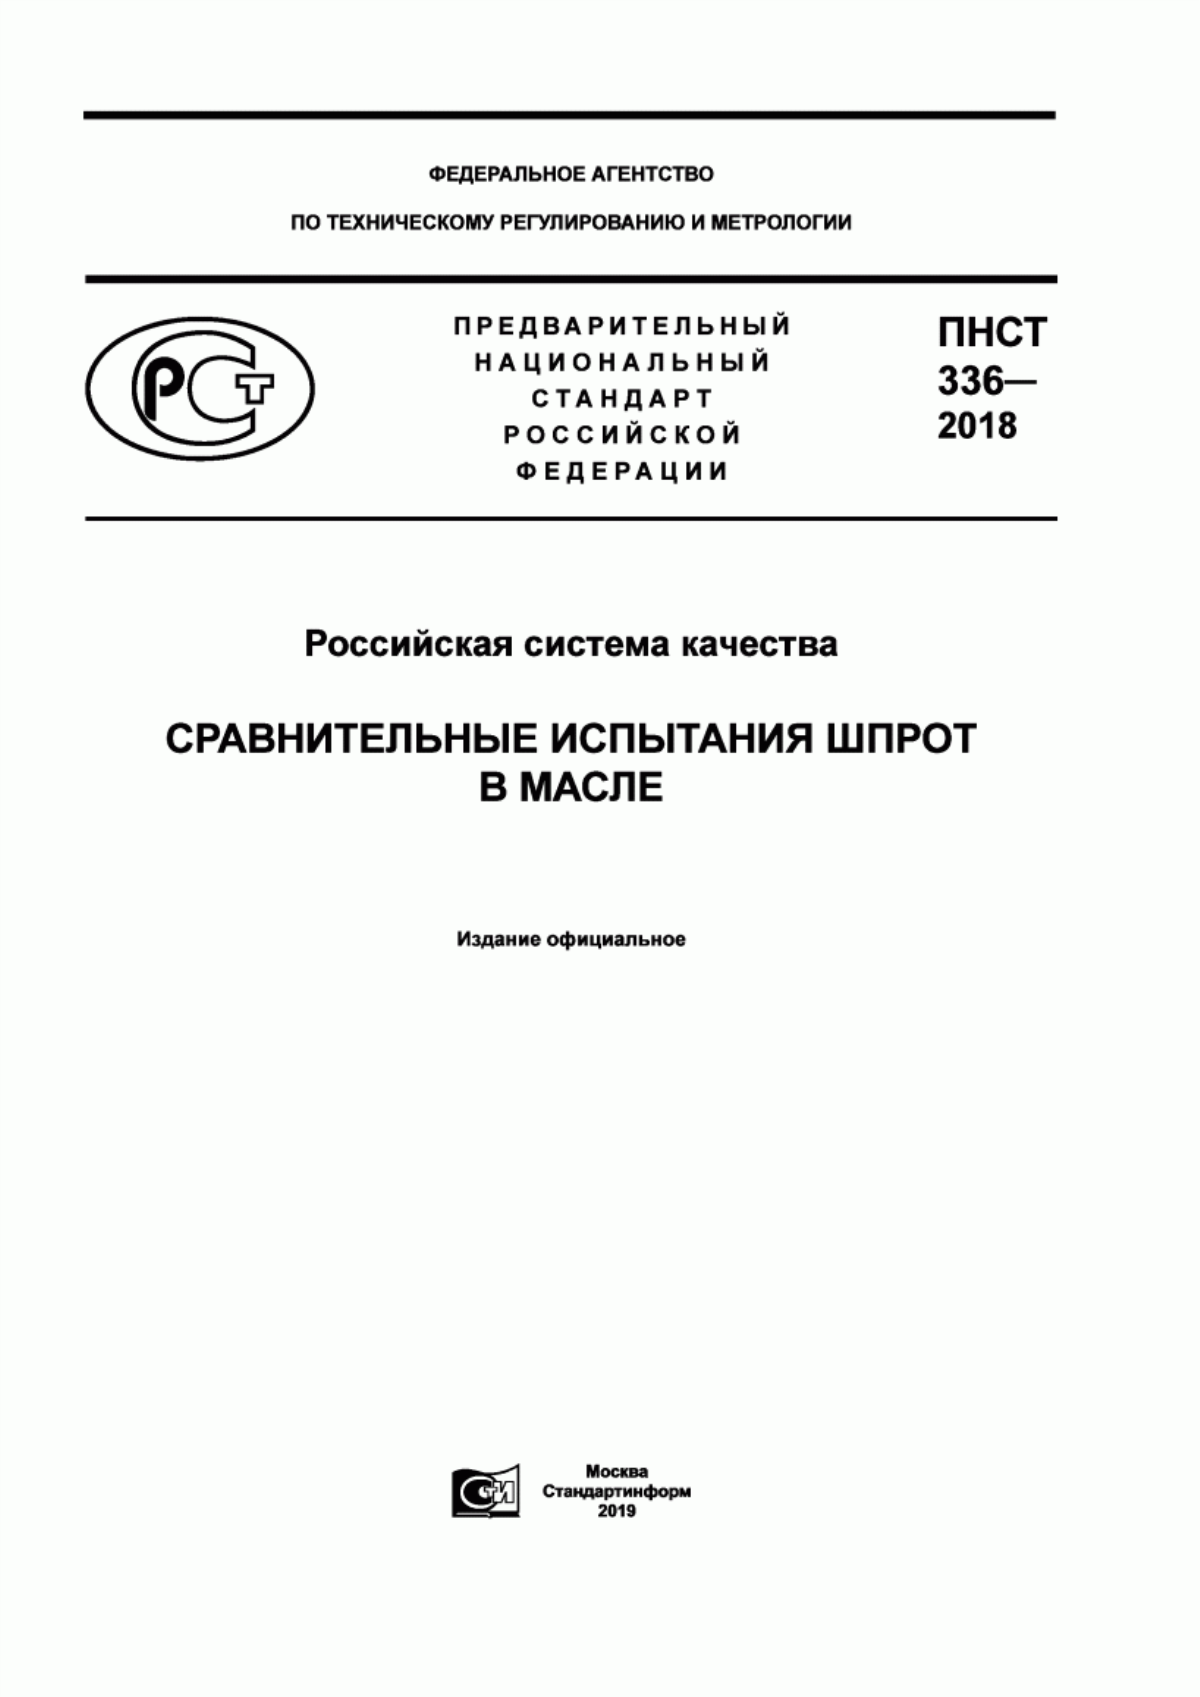 ПНСТ 336-2018 Российская система качества. Сравнительные испытания шпрот в масле